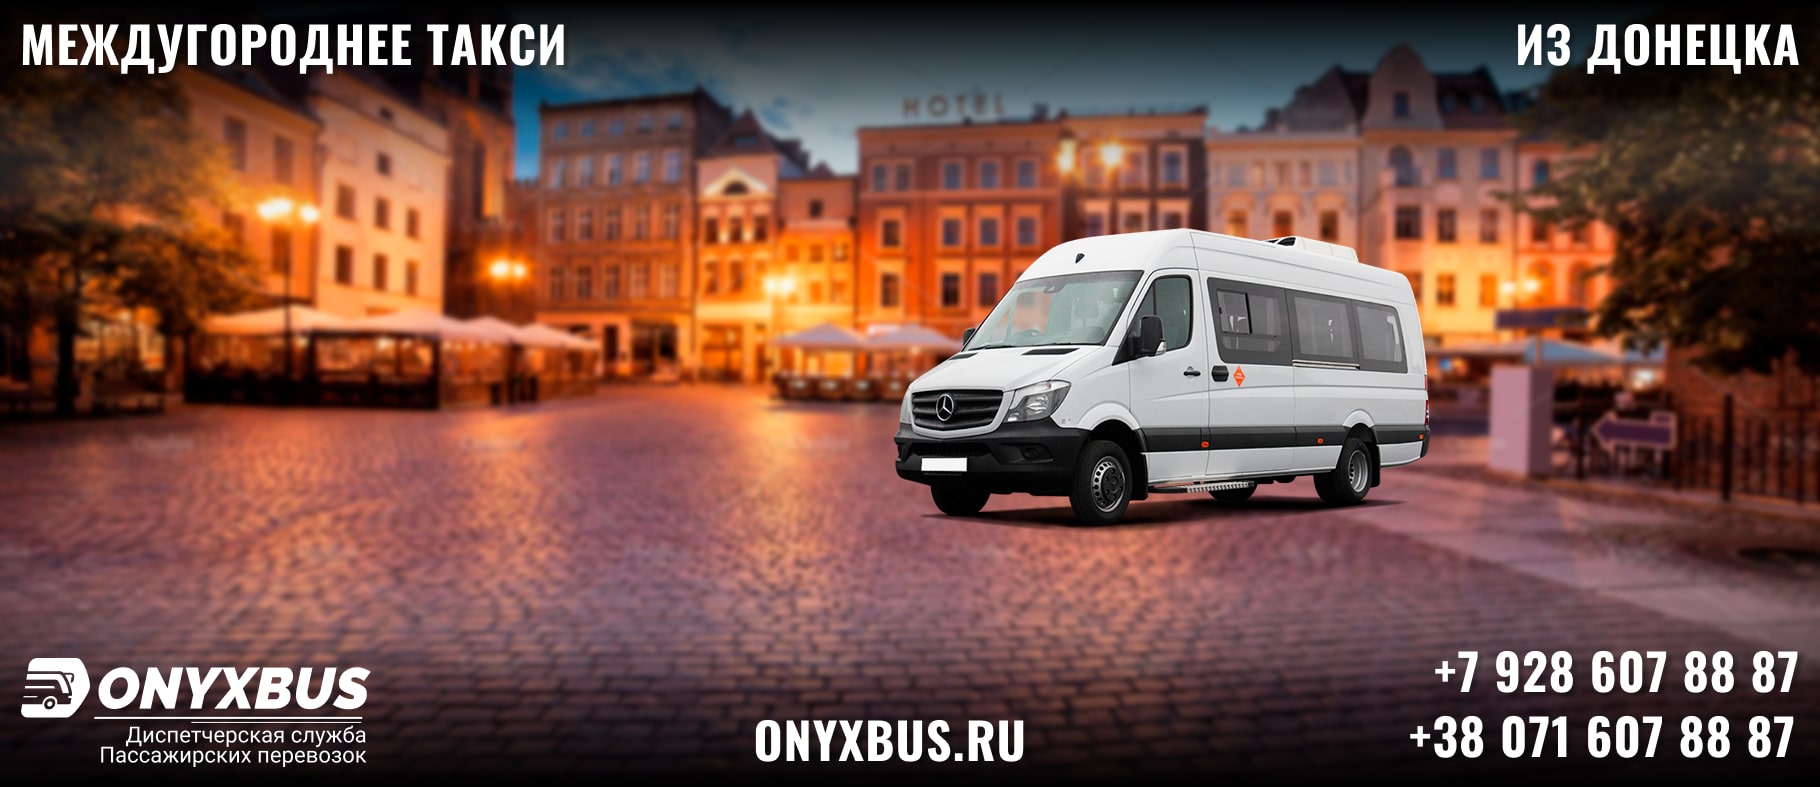 Заказ <br>Микроавтобуса Архипо Осиповка - Донецк